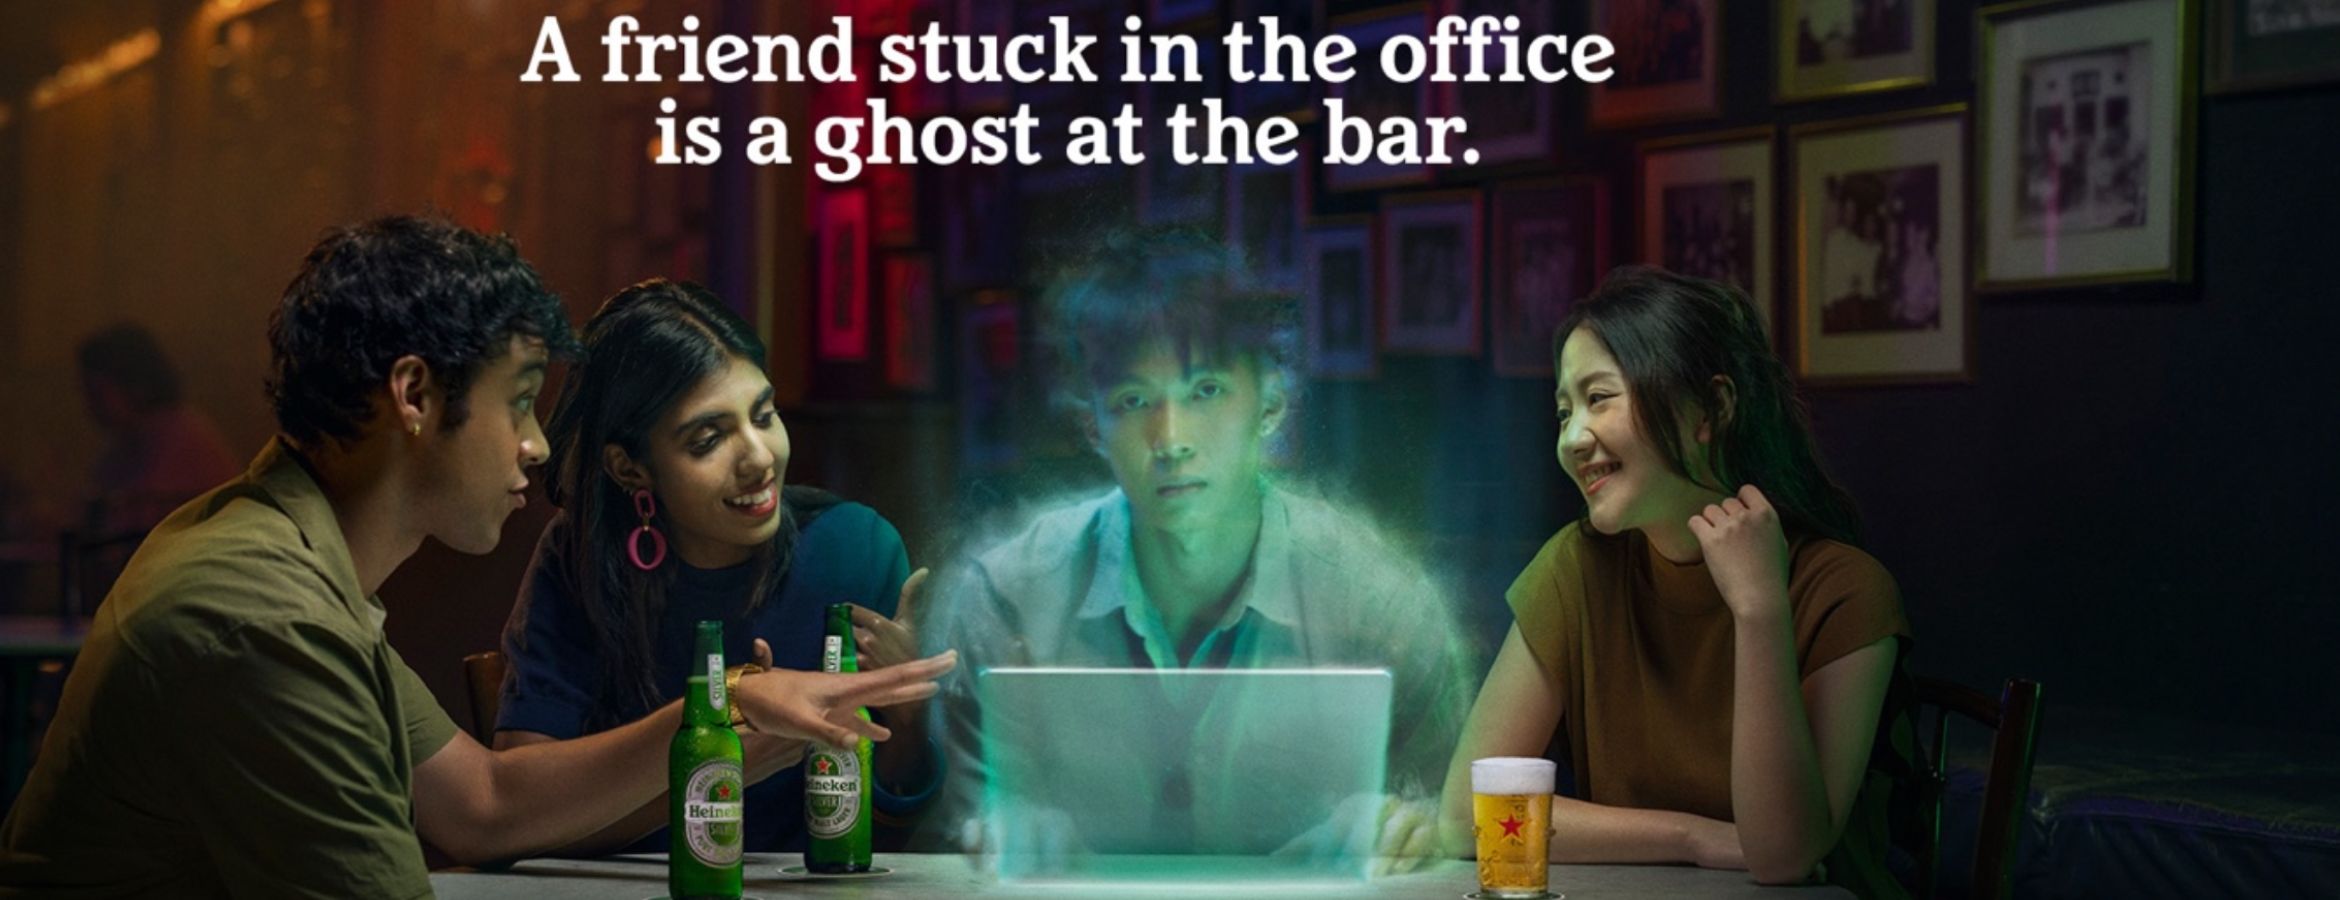 Heinekein invoque le fantôme du bar